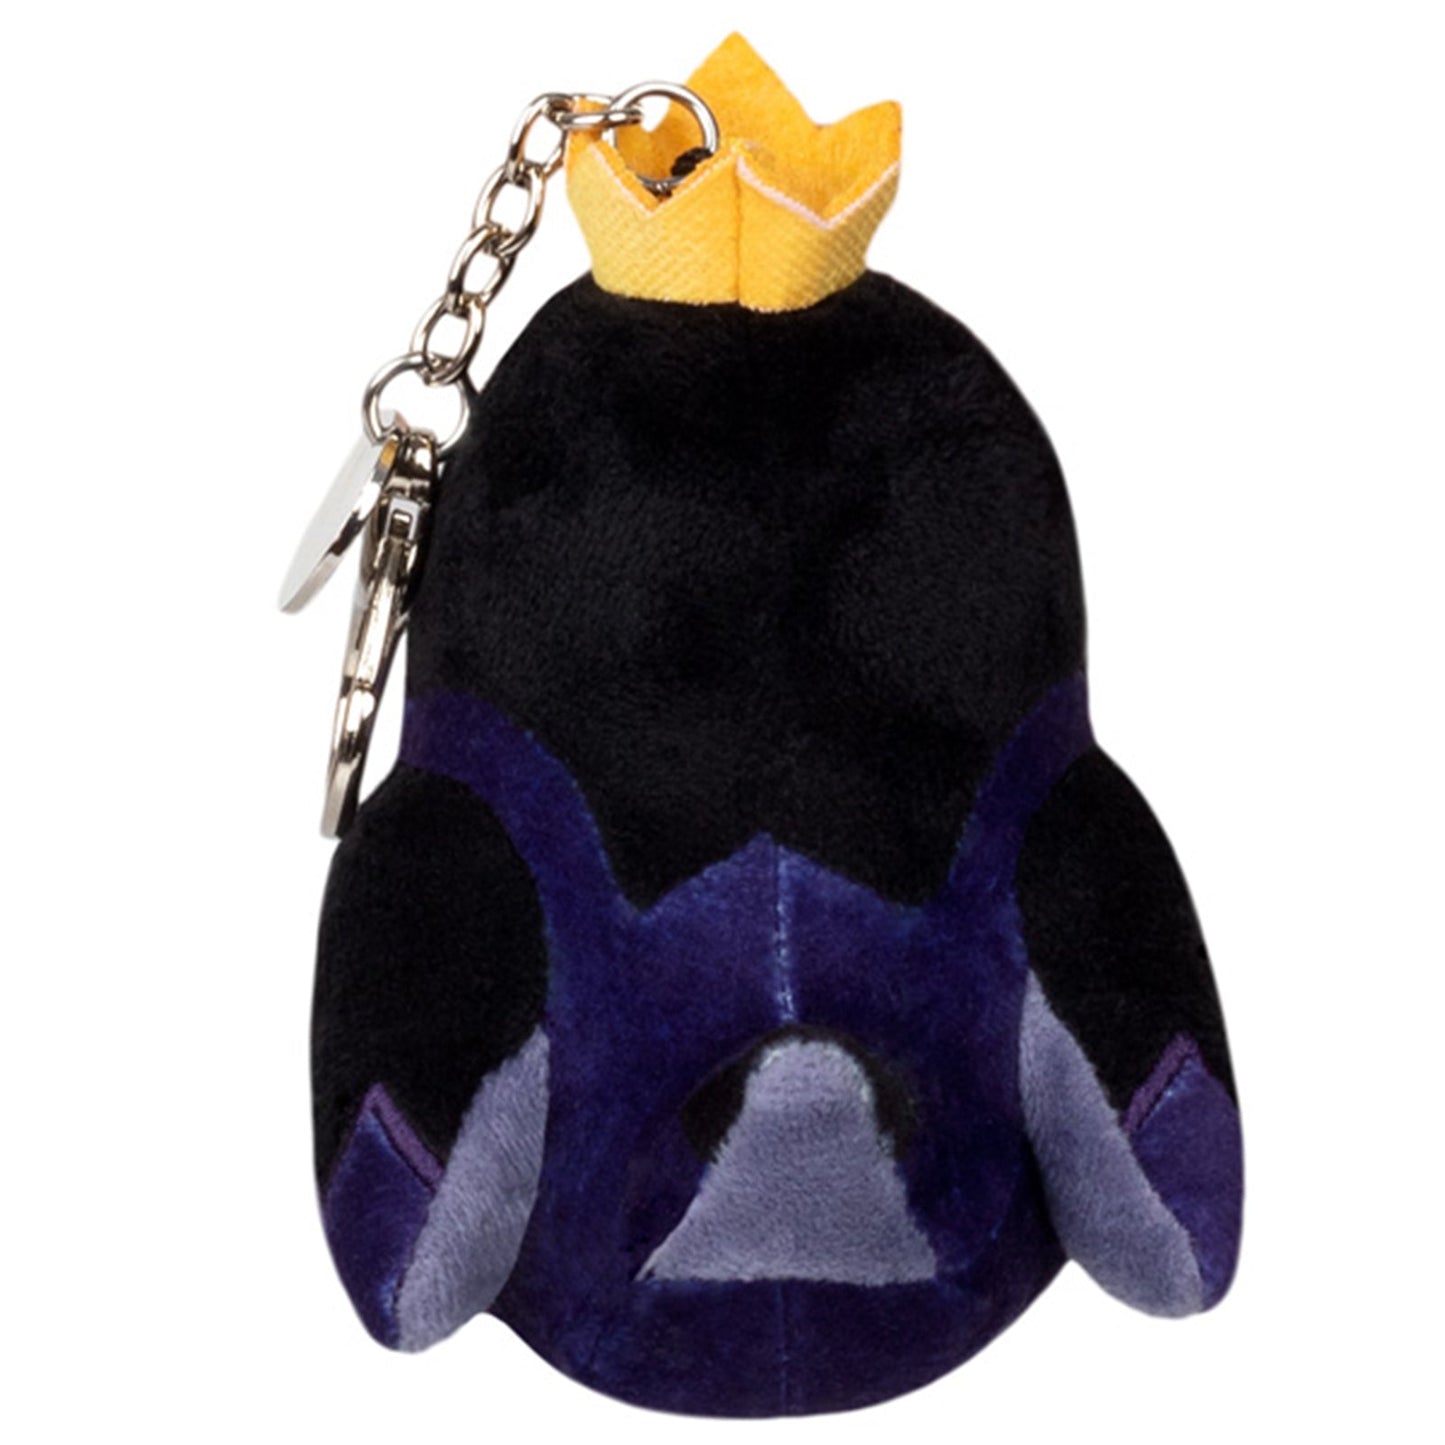 Squishable King Raven Micro 4 Inch Keychain Plush